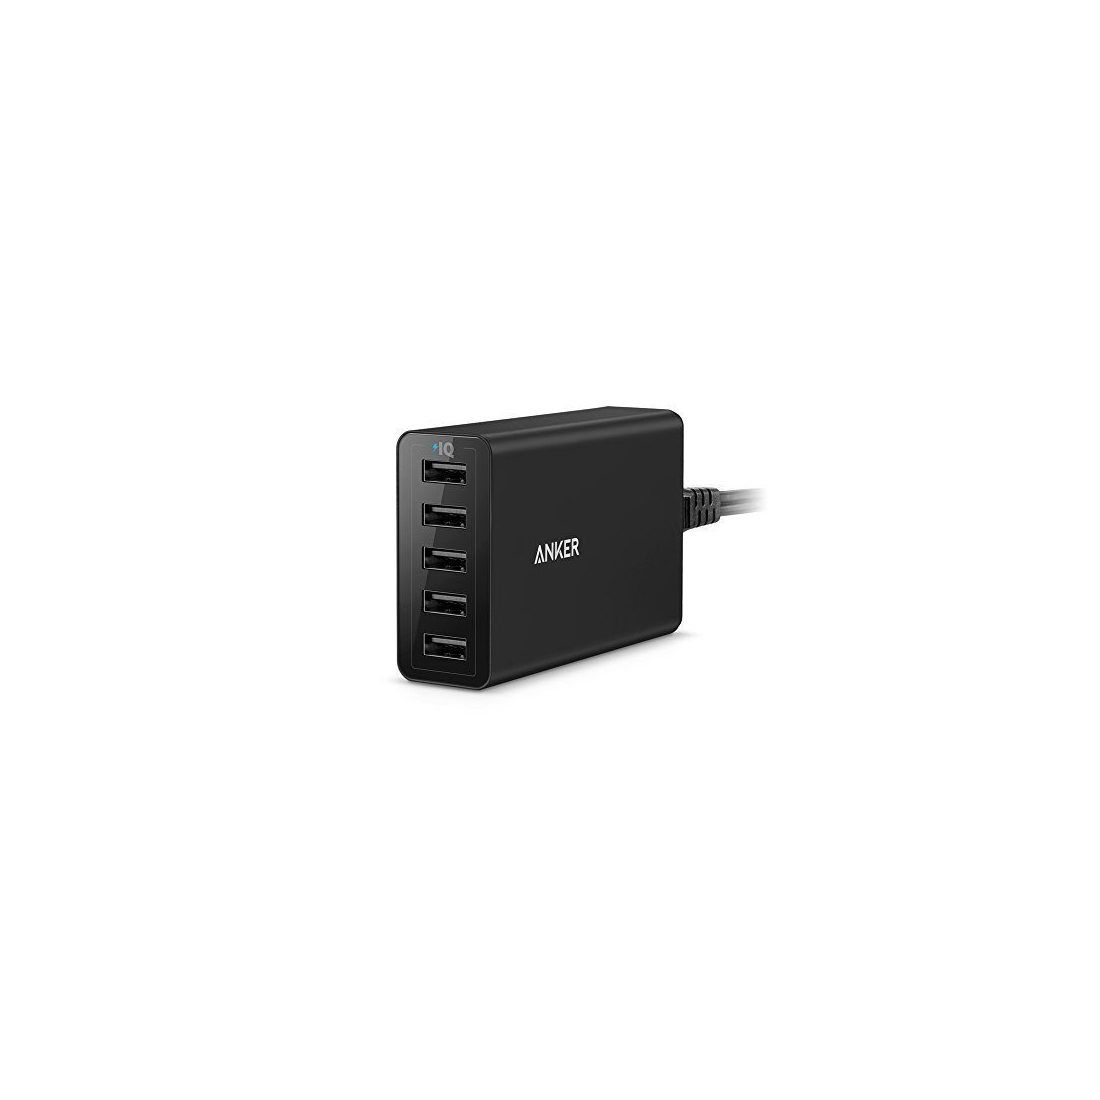 Ancre Power Chargeur Port 40 W de 5 Port USB Multi Port USB Chargeur pour iPhone 6/6 Plus, iPad Air 2/Mini 3, Galaxy S6/S6 Ed